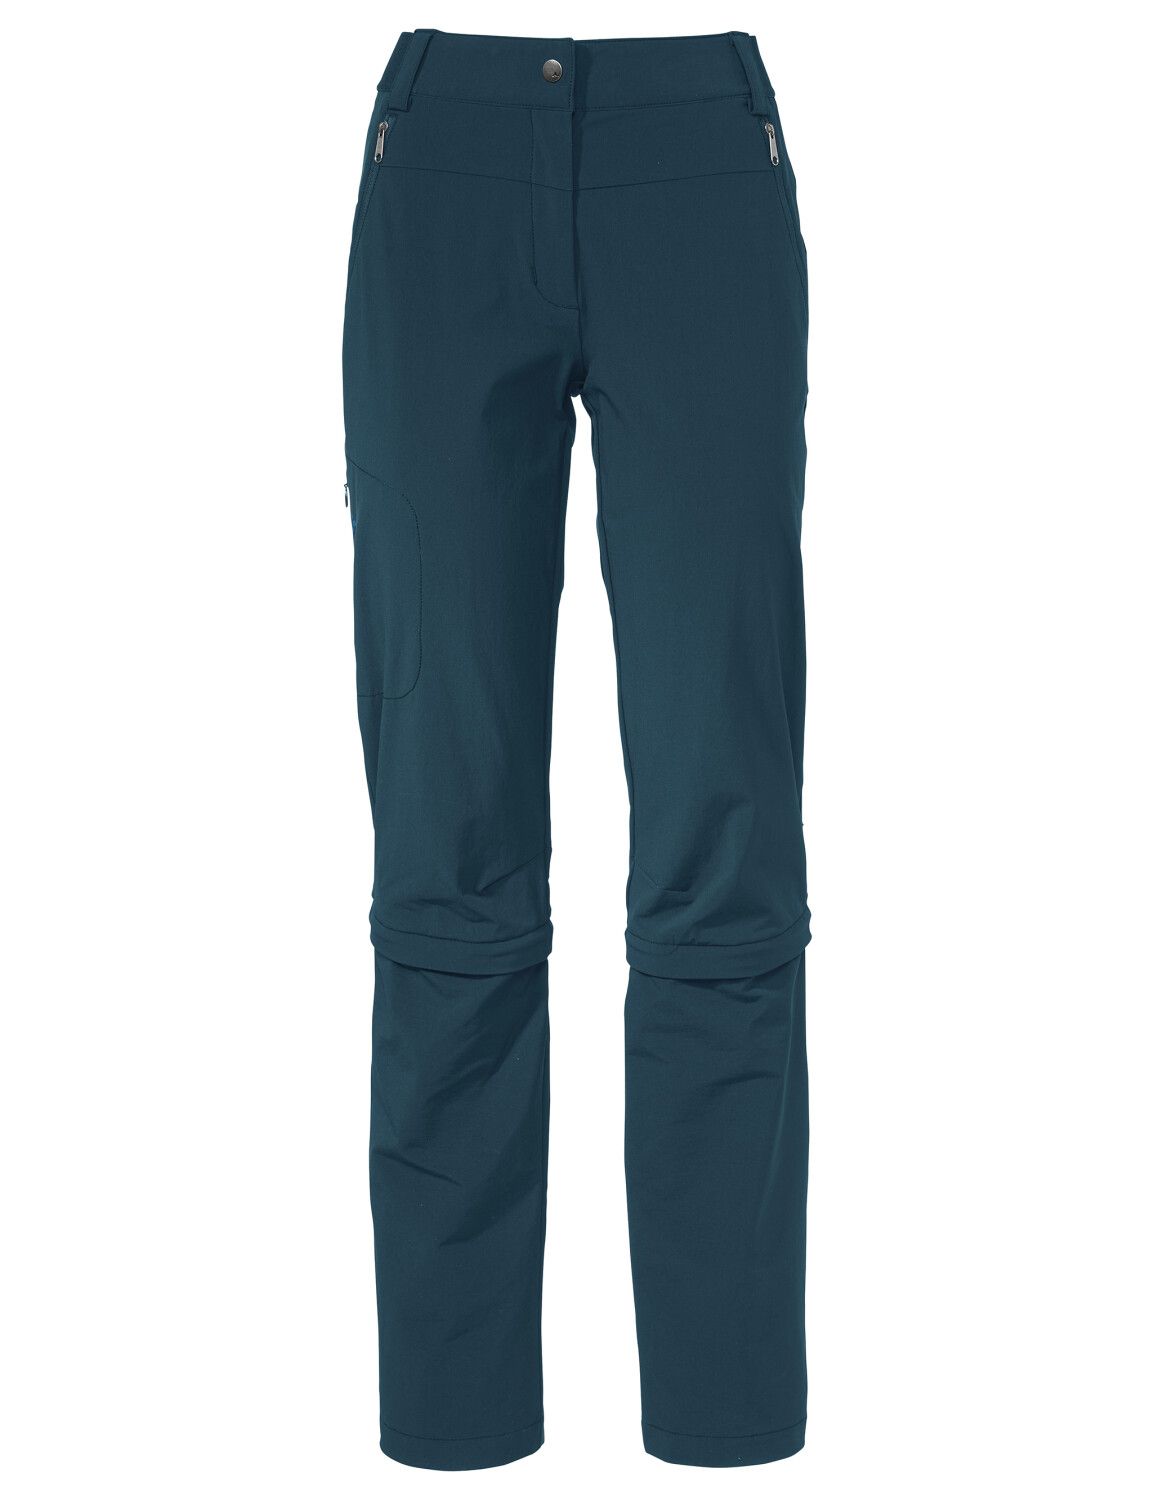 VAUDE Women's Farley Stretch Capri T-Zip Pants III (Bild 6)